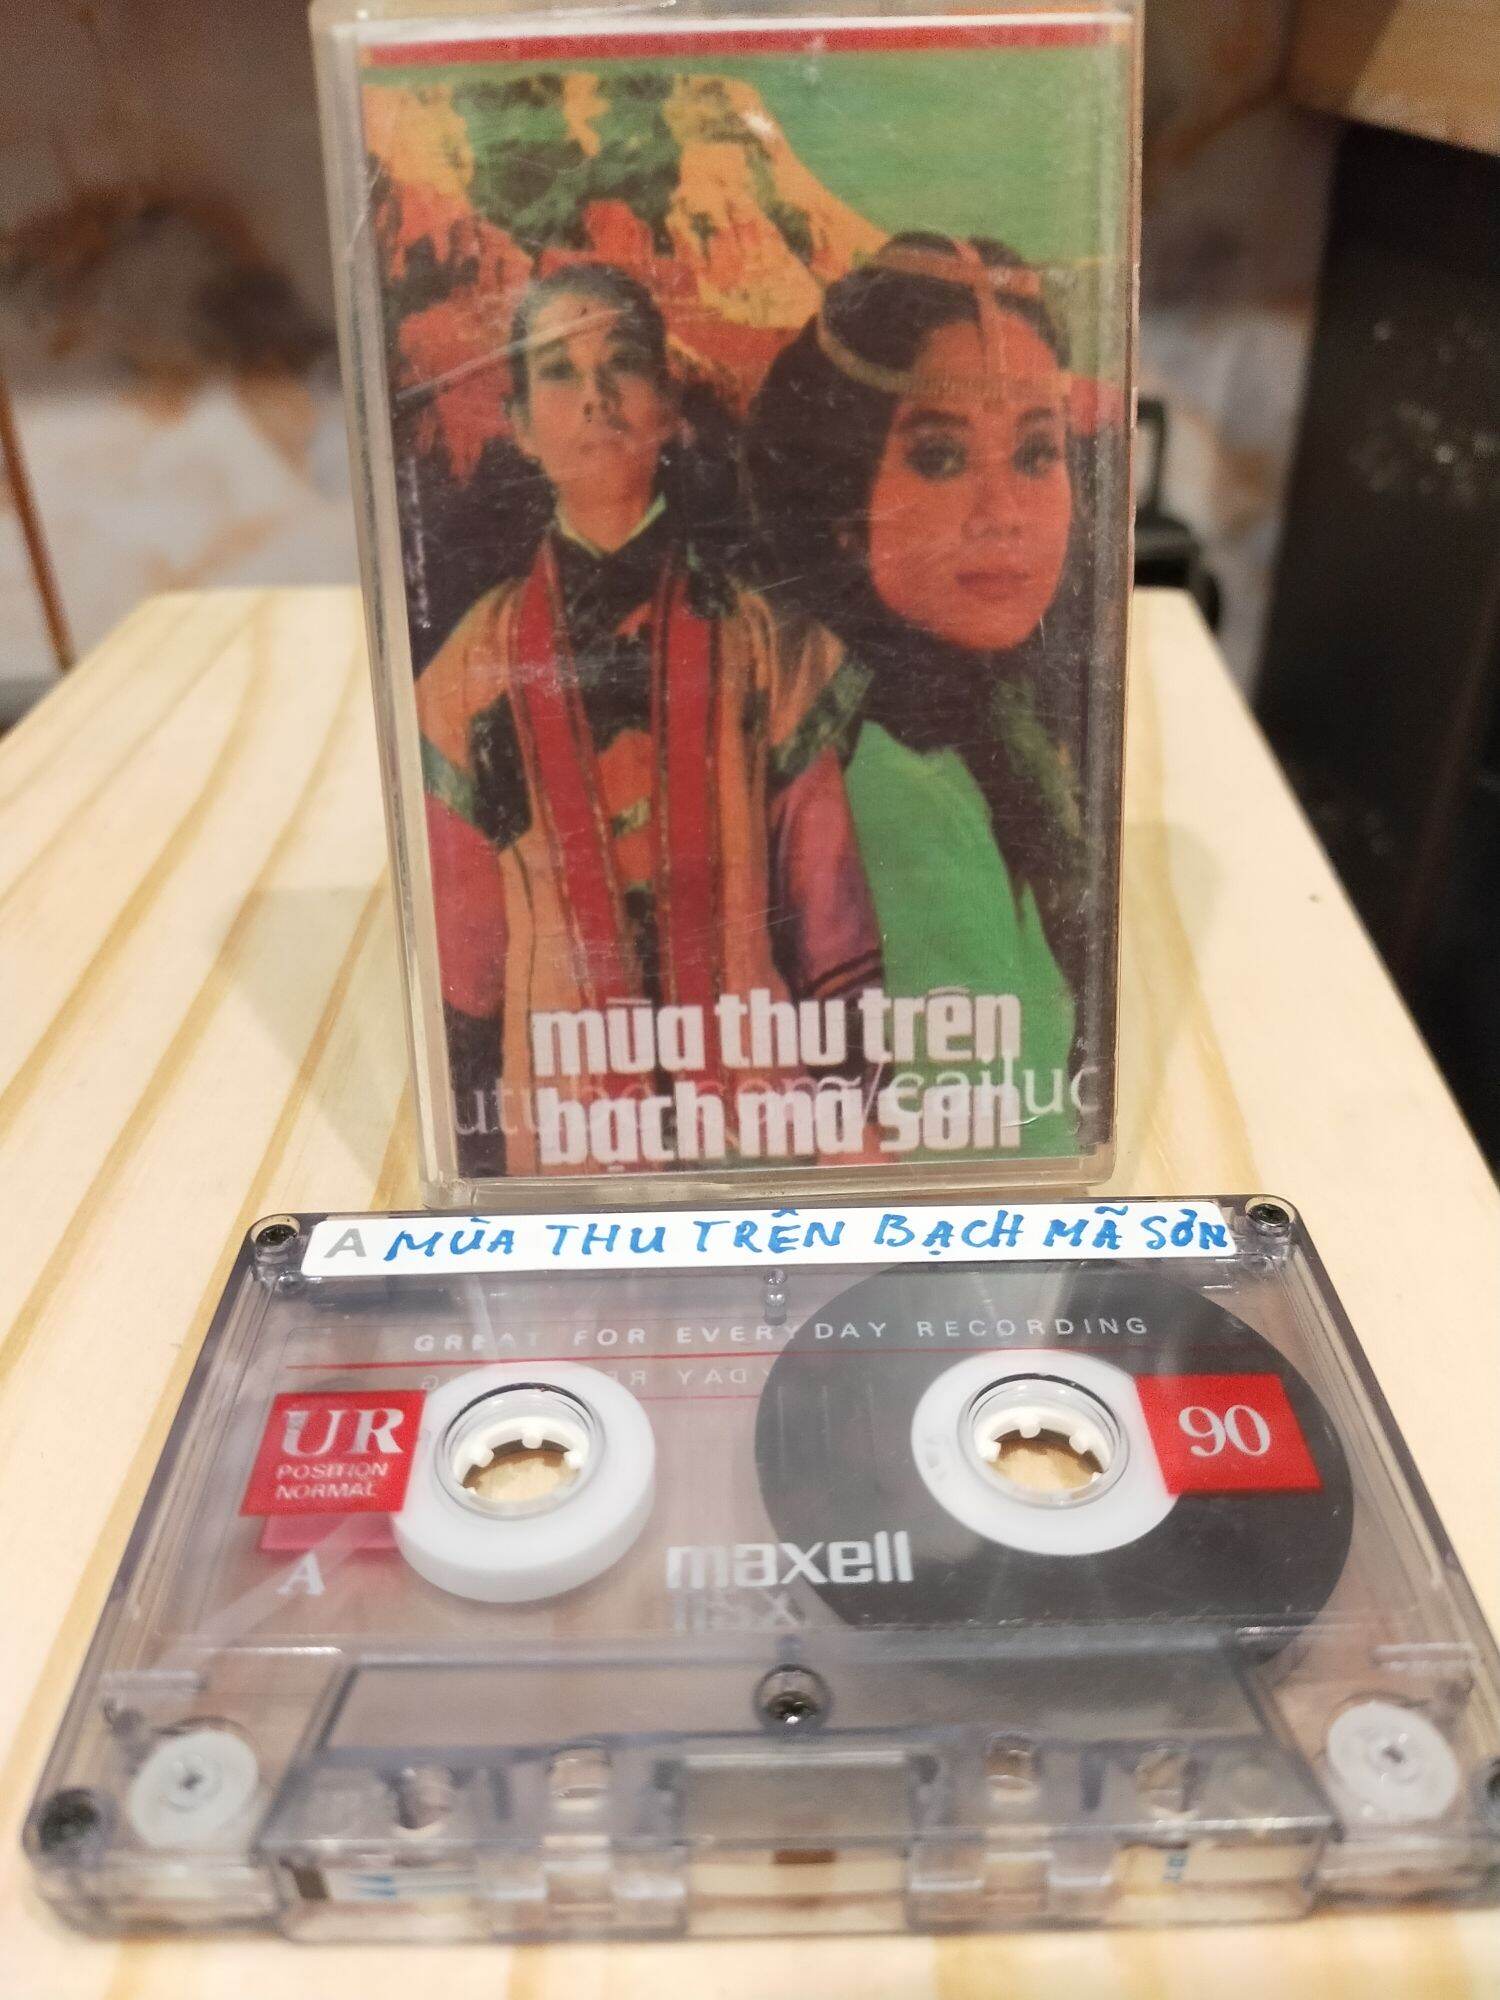 1 băng cassette maxell UR 90 phút cải lương mùa thu trên bạch mã Sơn( lưu ý: đây là băng cũ